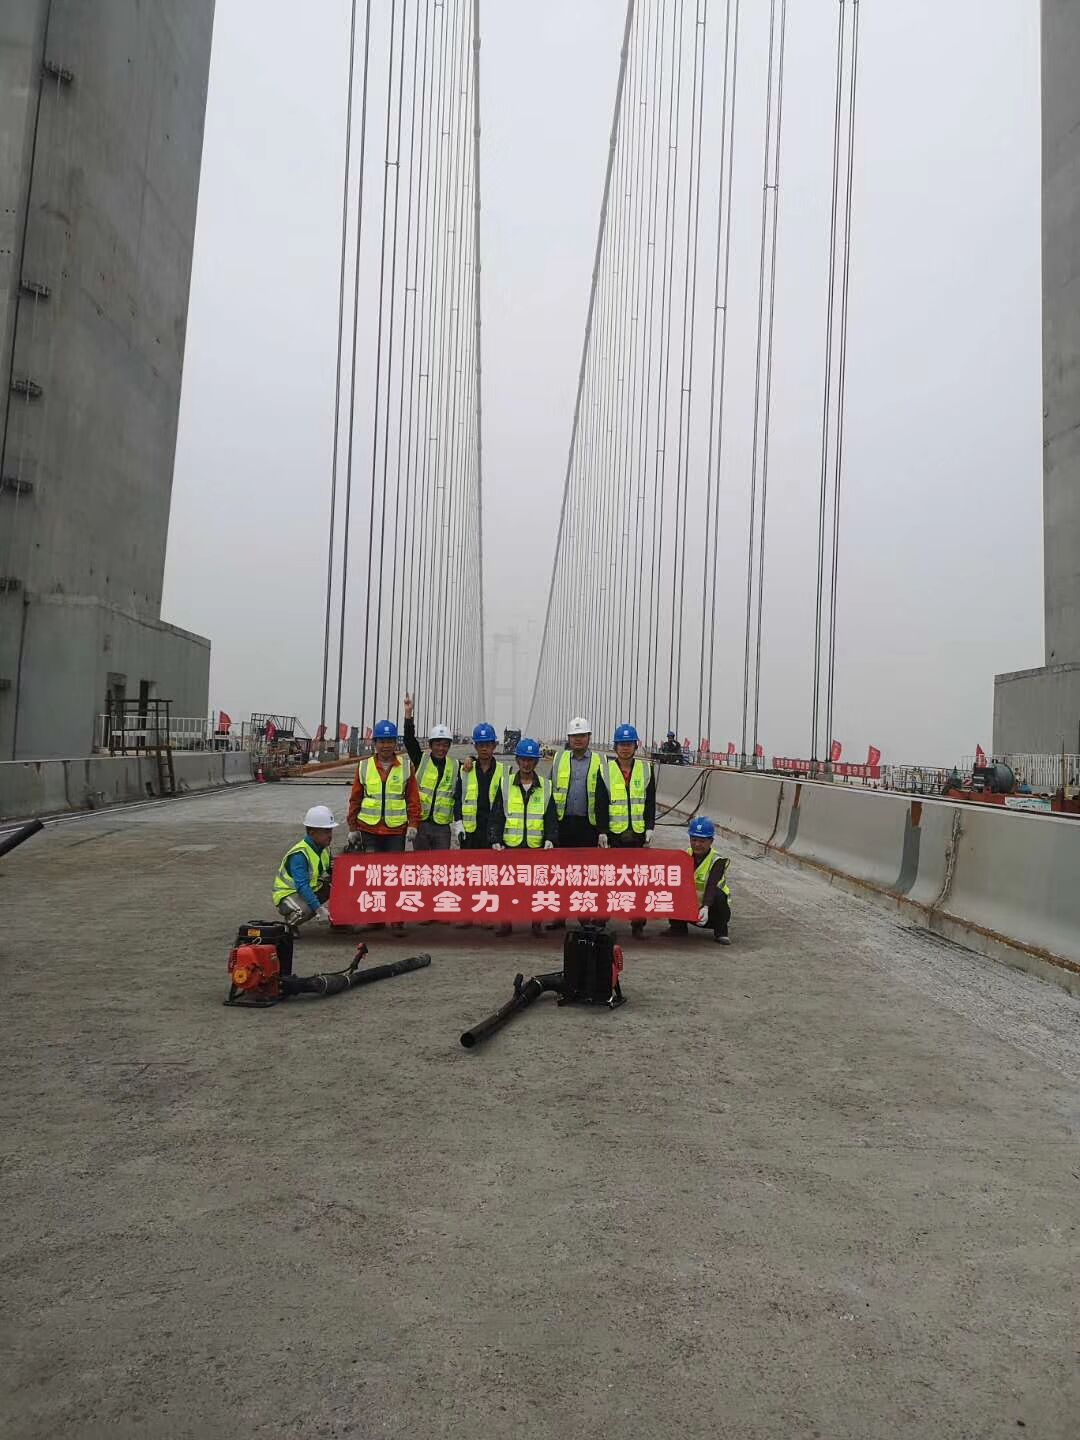 广州艺佰涂科技有限公司 文昌纤维增强型桥面防水涂料促销